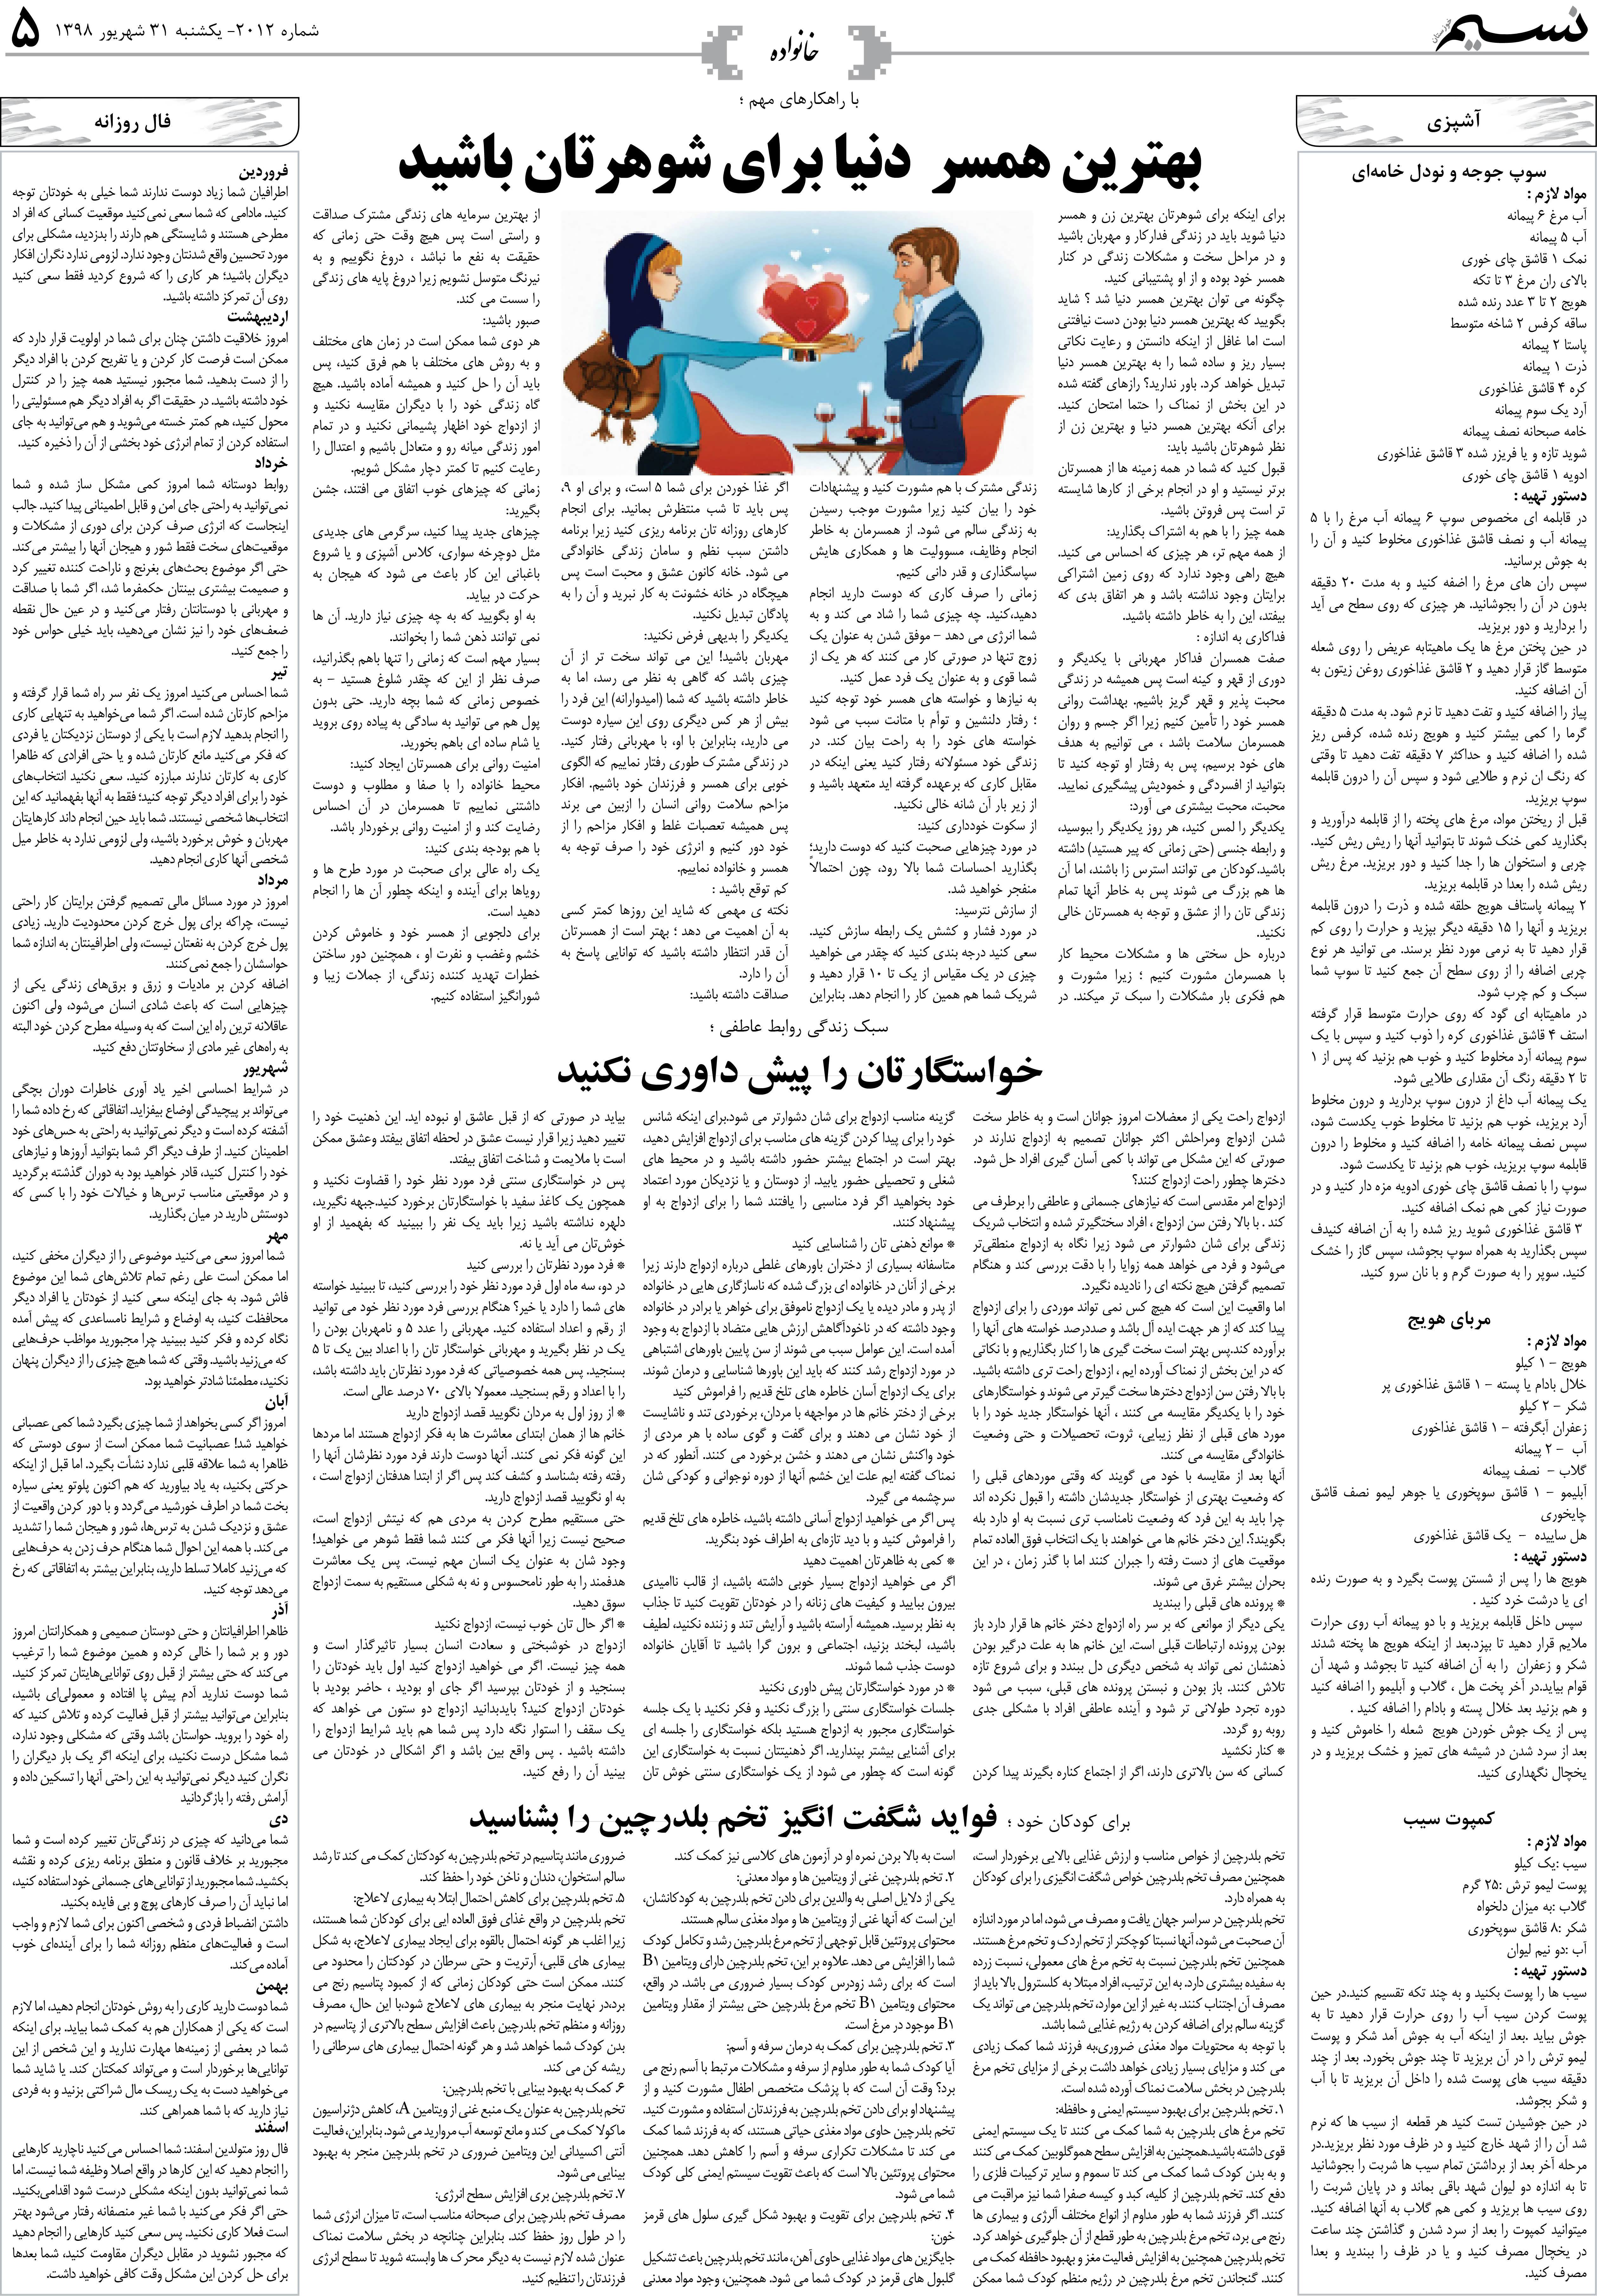 صفحه خانواده روزنامه نسیم شماره 2012